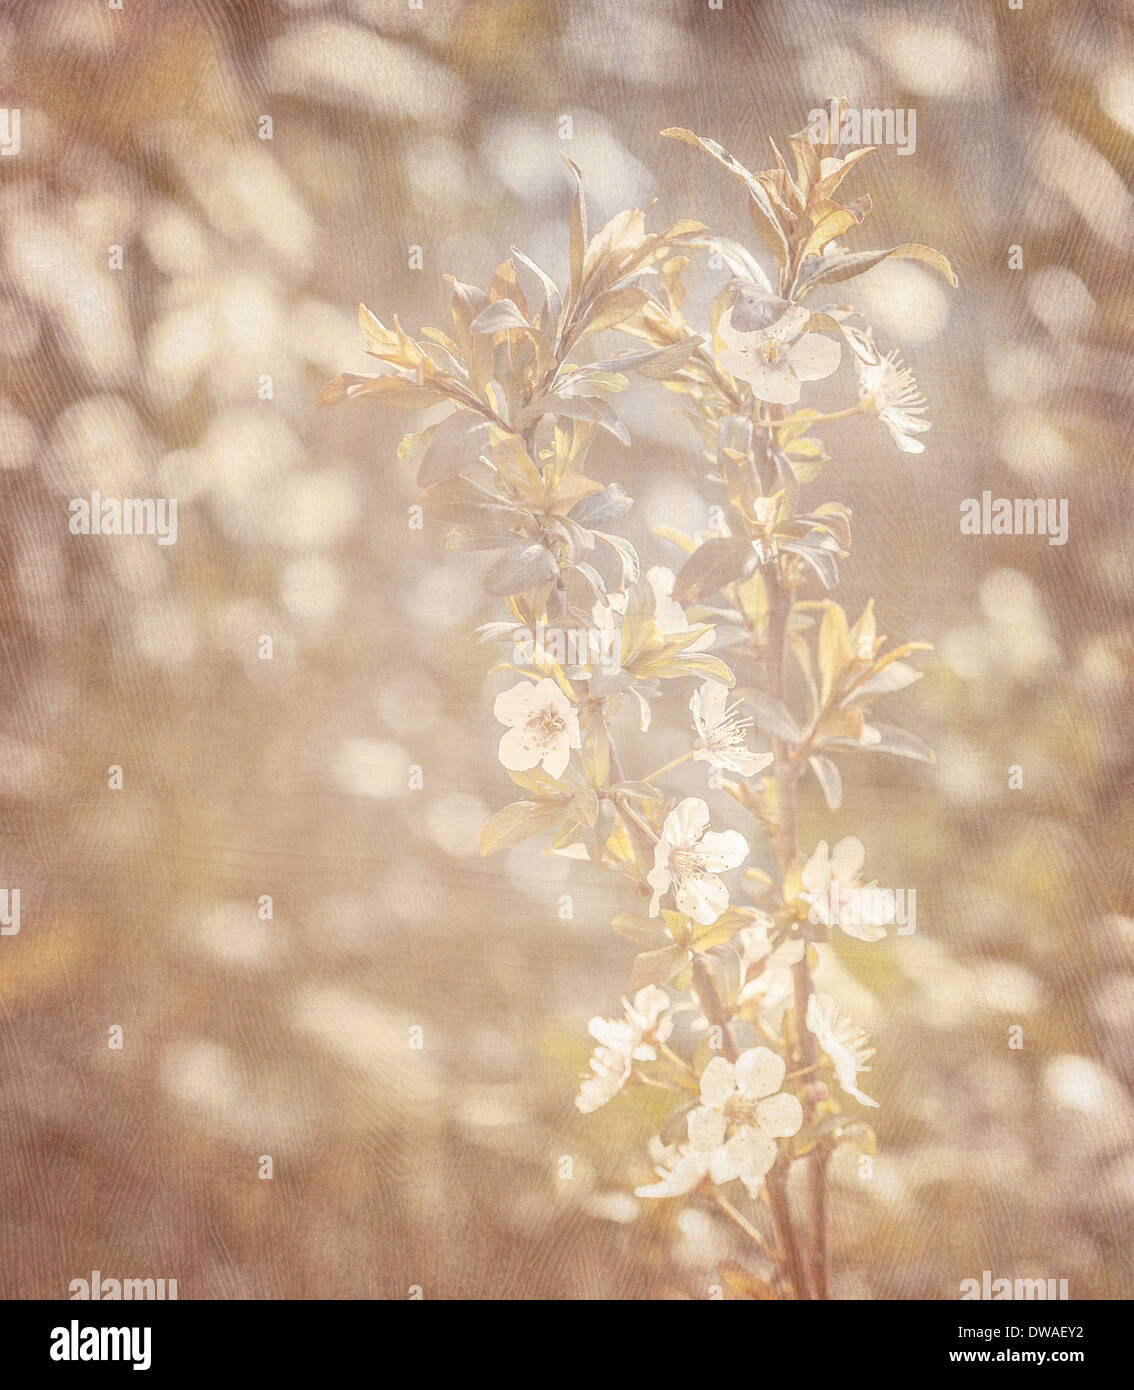 Frühling blühende Hintergrund, sanfte weiße Kirsche Blumen, Retro-Stil Foto, Bild mit Grunge-Effekt, Frühling-Natur Stockfoto